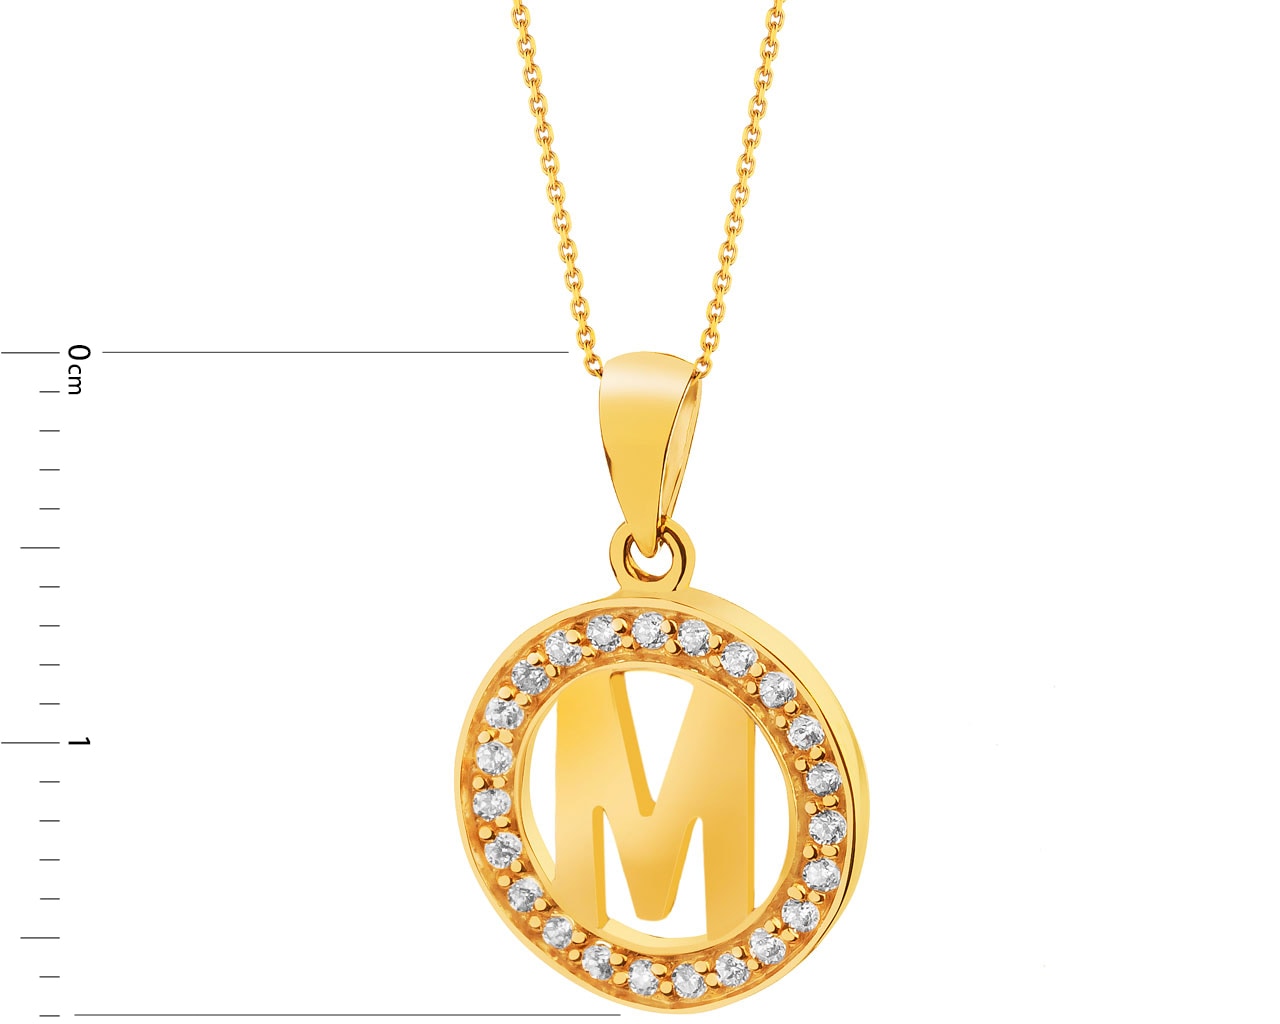 Buy Gold Necklaces & Pendants for Women by Estele Online | Ajio.com